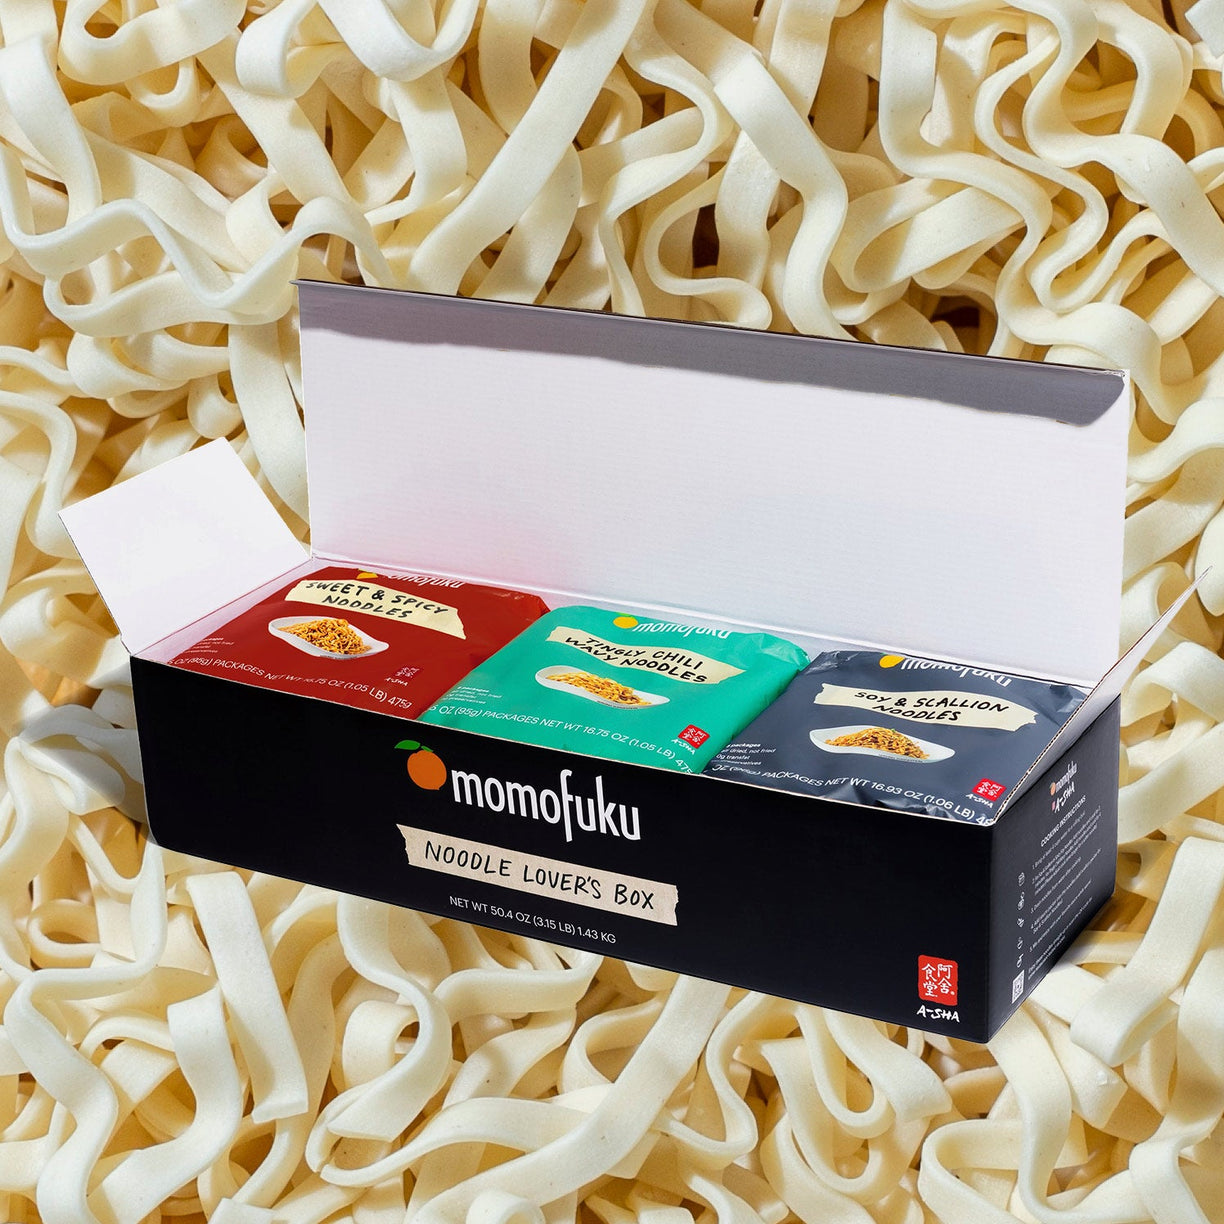 Noodle Lover's Box